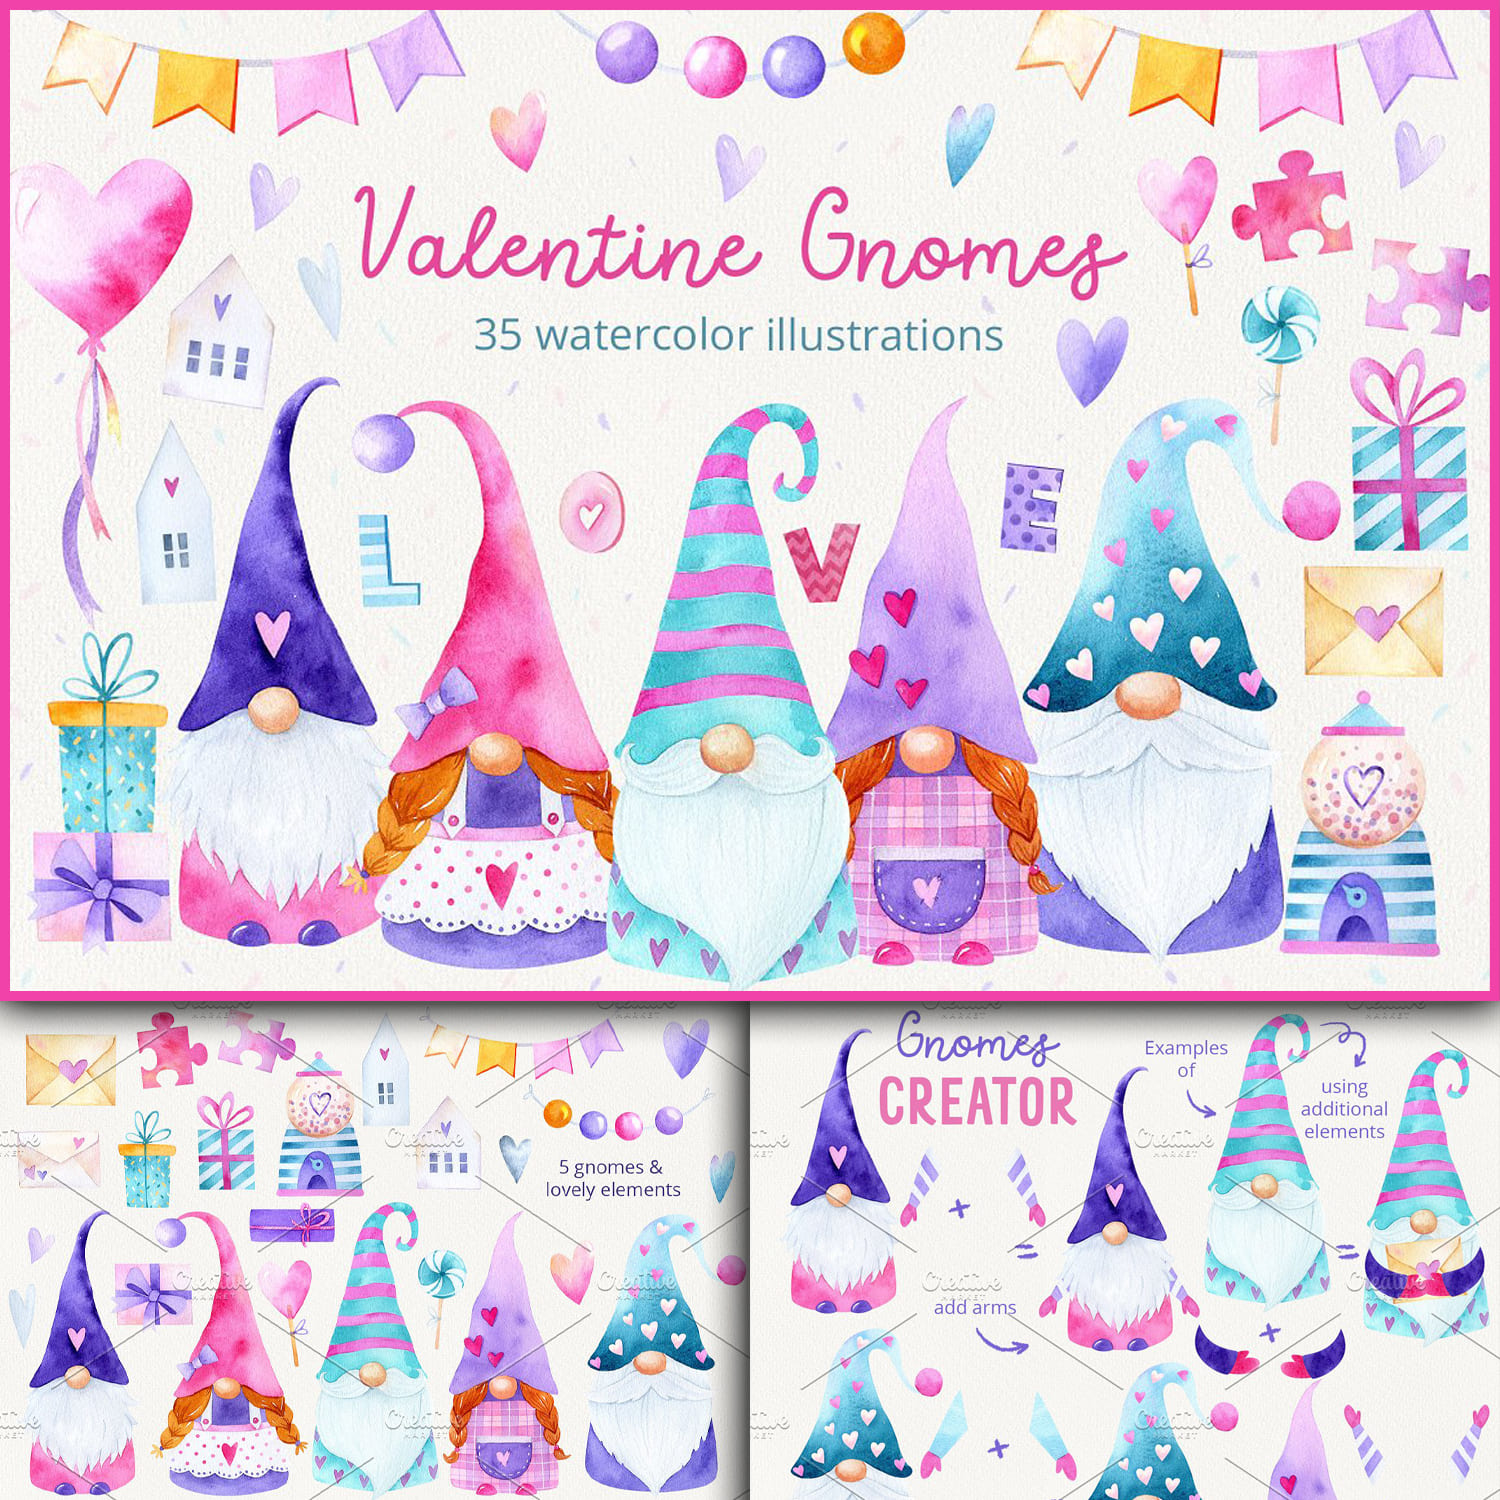 Three slides of Valentine Gnomes.